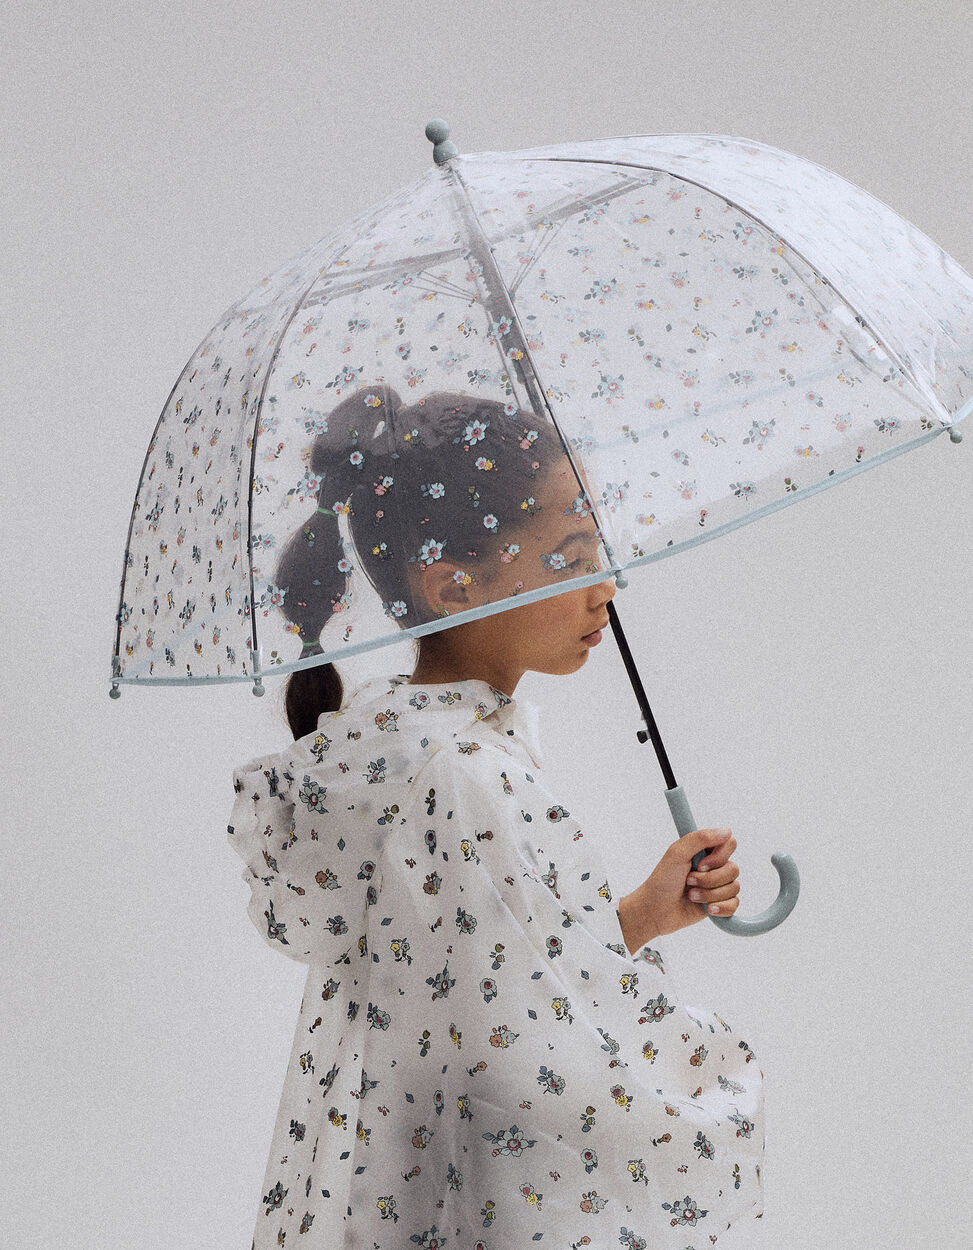 Acheter en ligne Parapluie Floral Transparent pour Fille, Bleu Clair